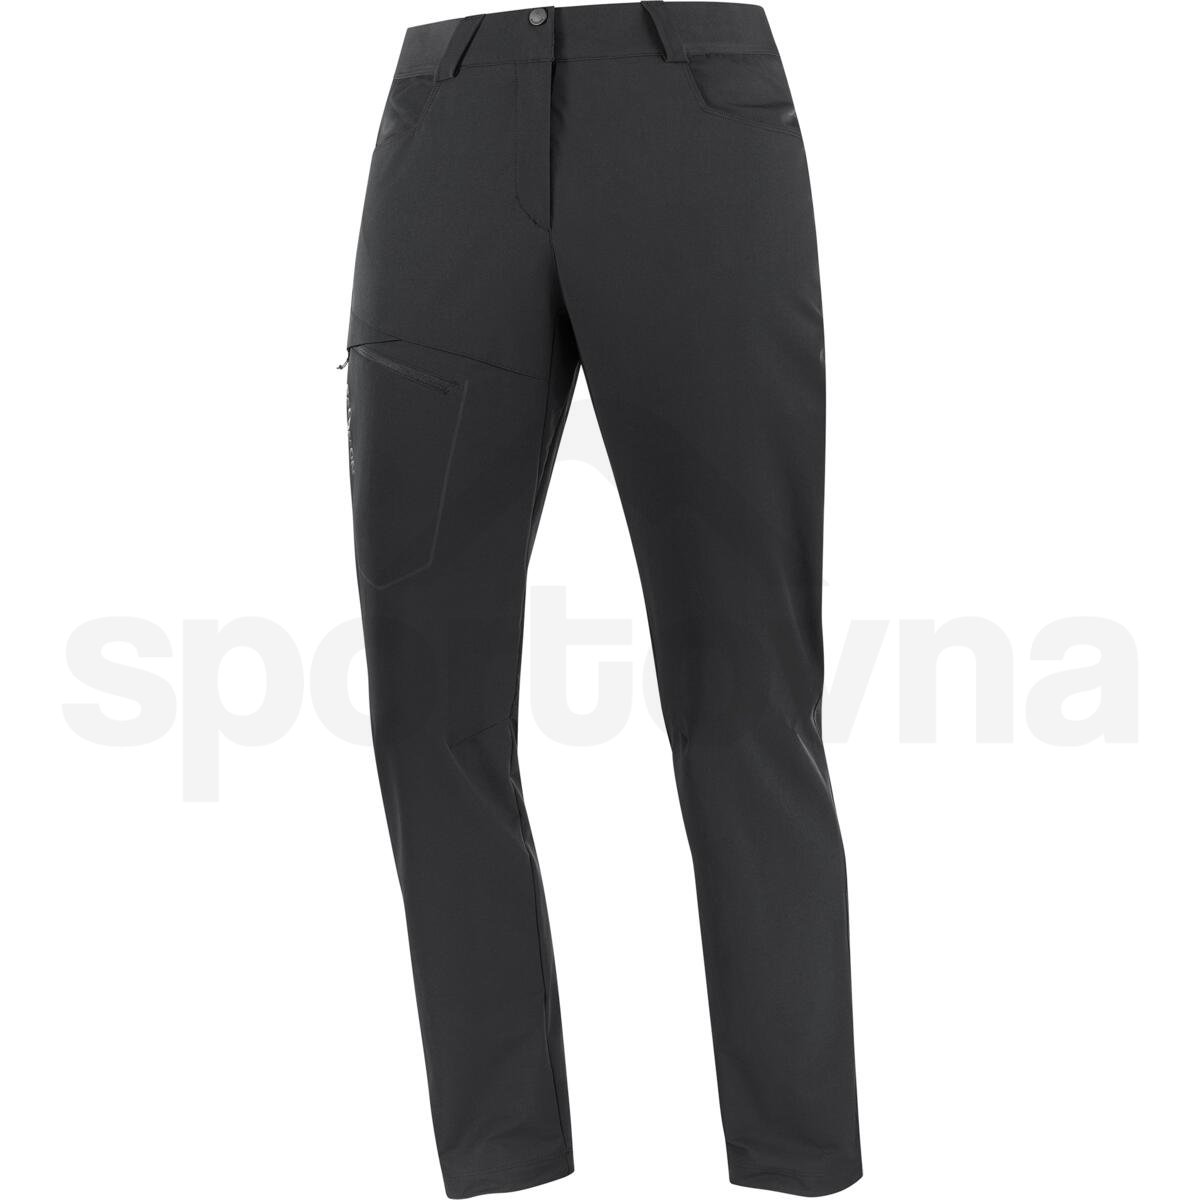 Kalhoty Salomon Wayfarer Warm Pants W - černá (prodloužená délka)